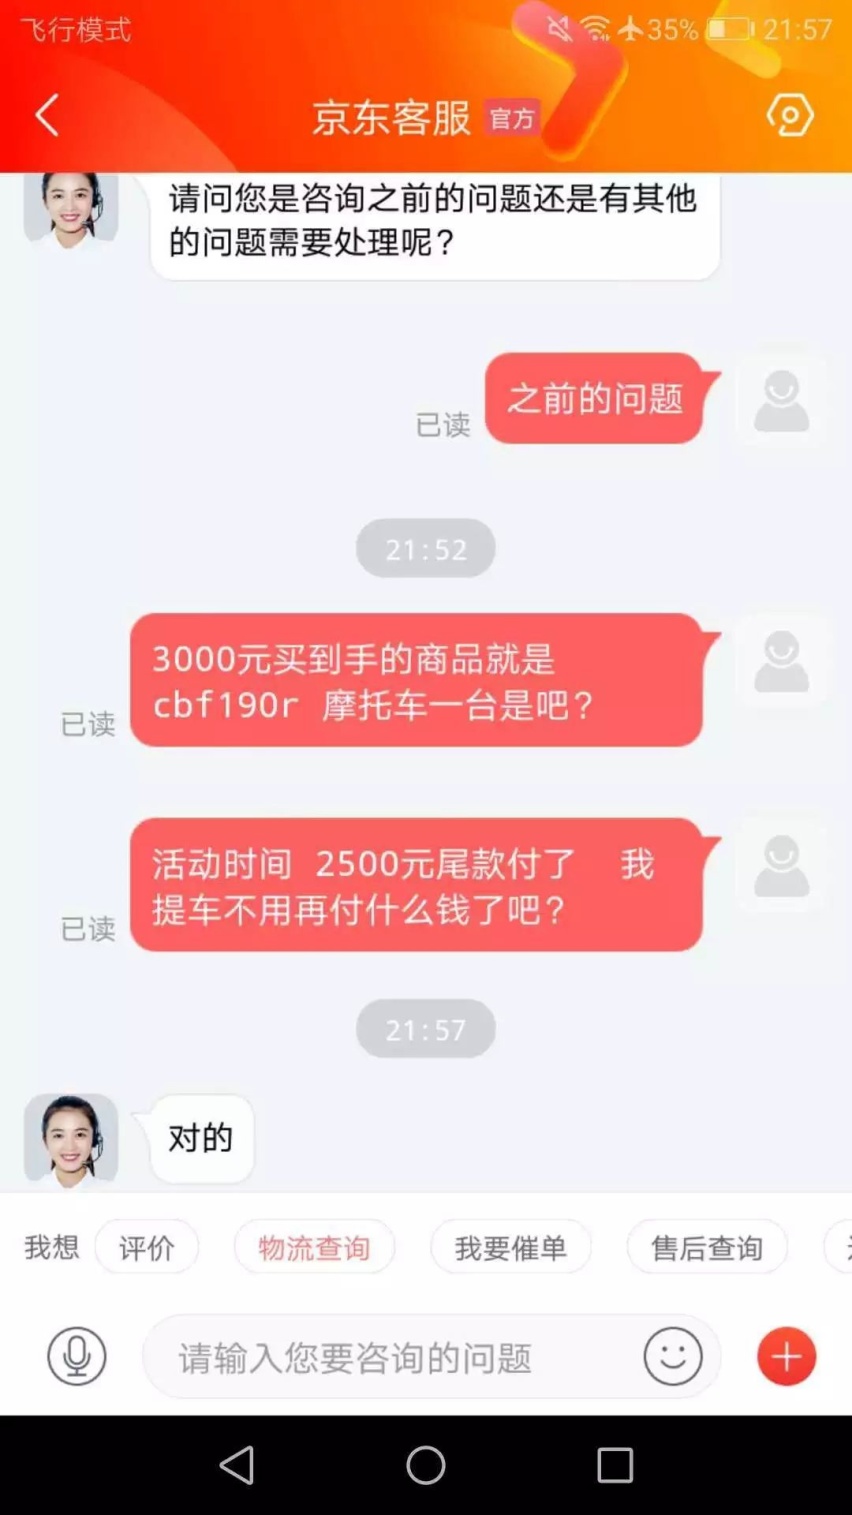 刘强东的京东又“耍流氓” 618当天3千买摩托第二天涨1.3